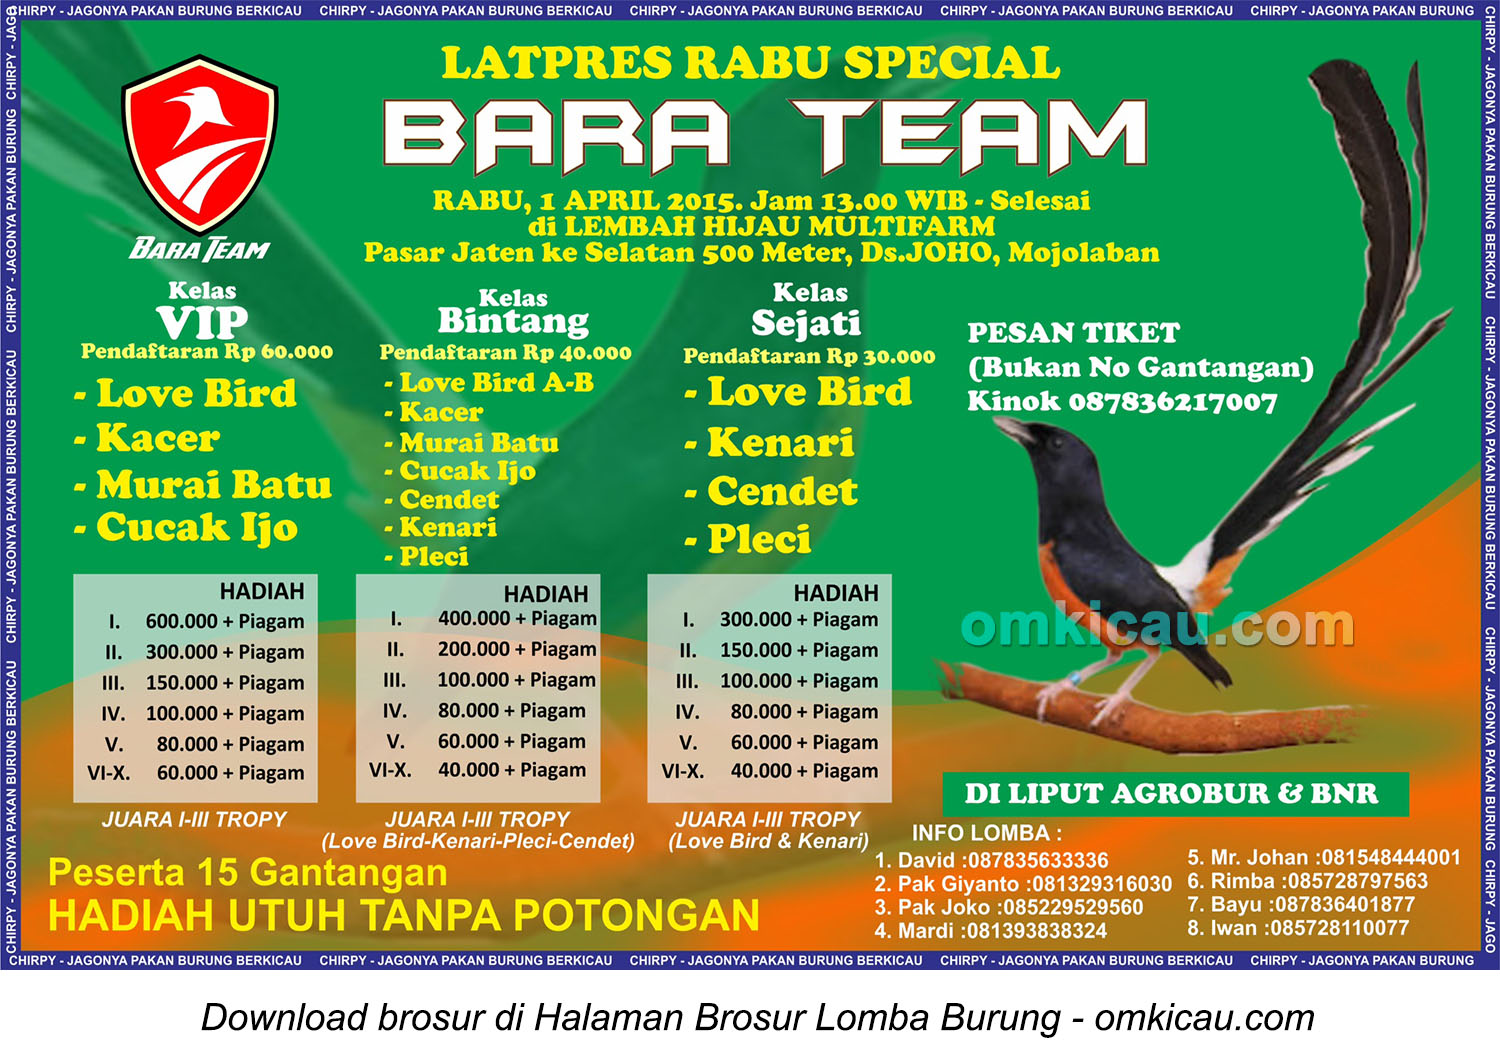 Brosur Latpres Rabu Special Bara Team, Sukoharjo, 1 April 2015